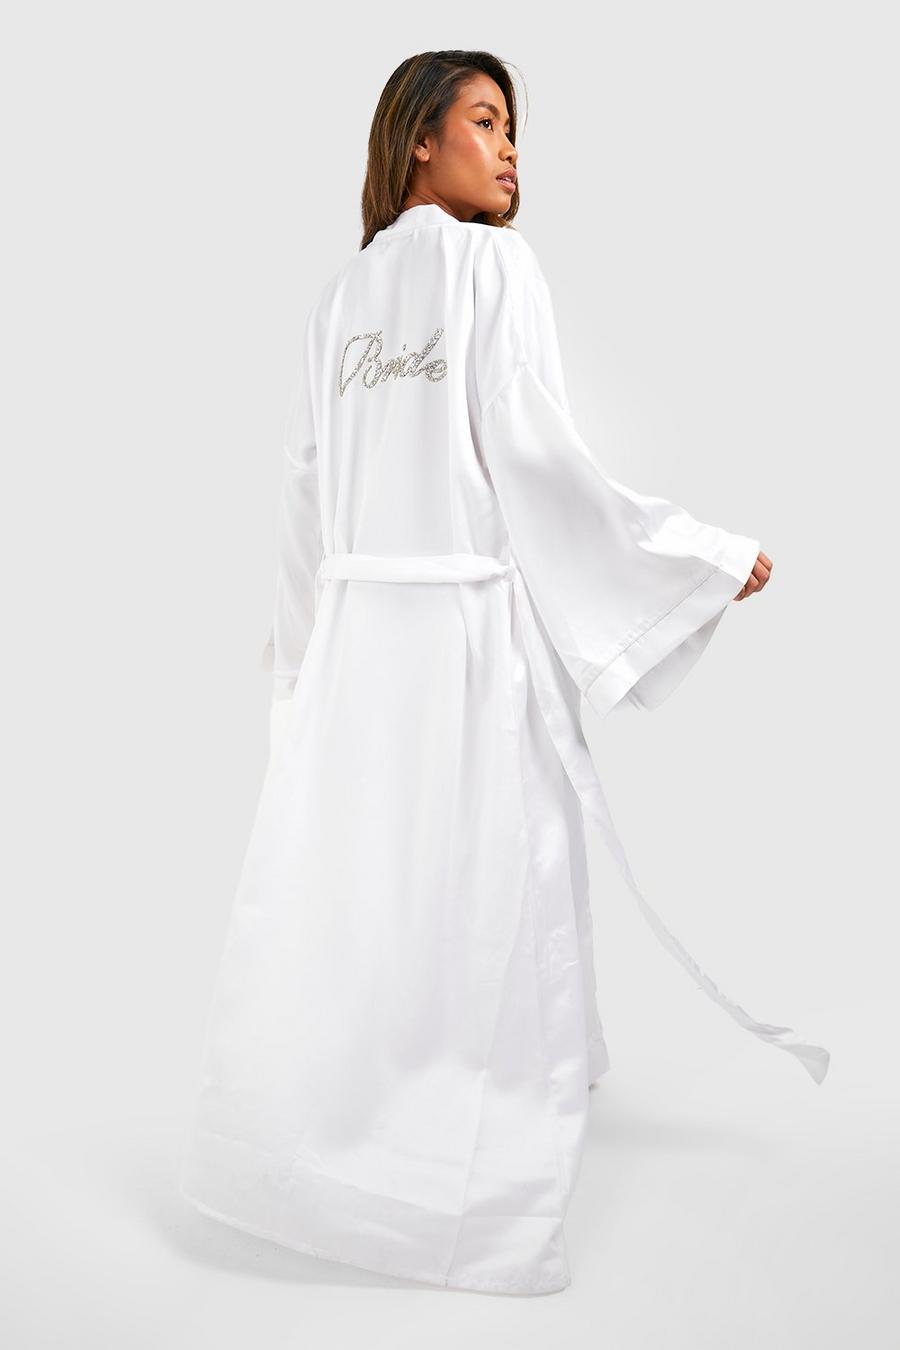 White Bride Lång morgonrock i satin med strass